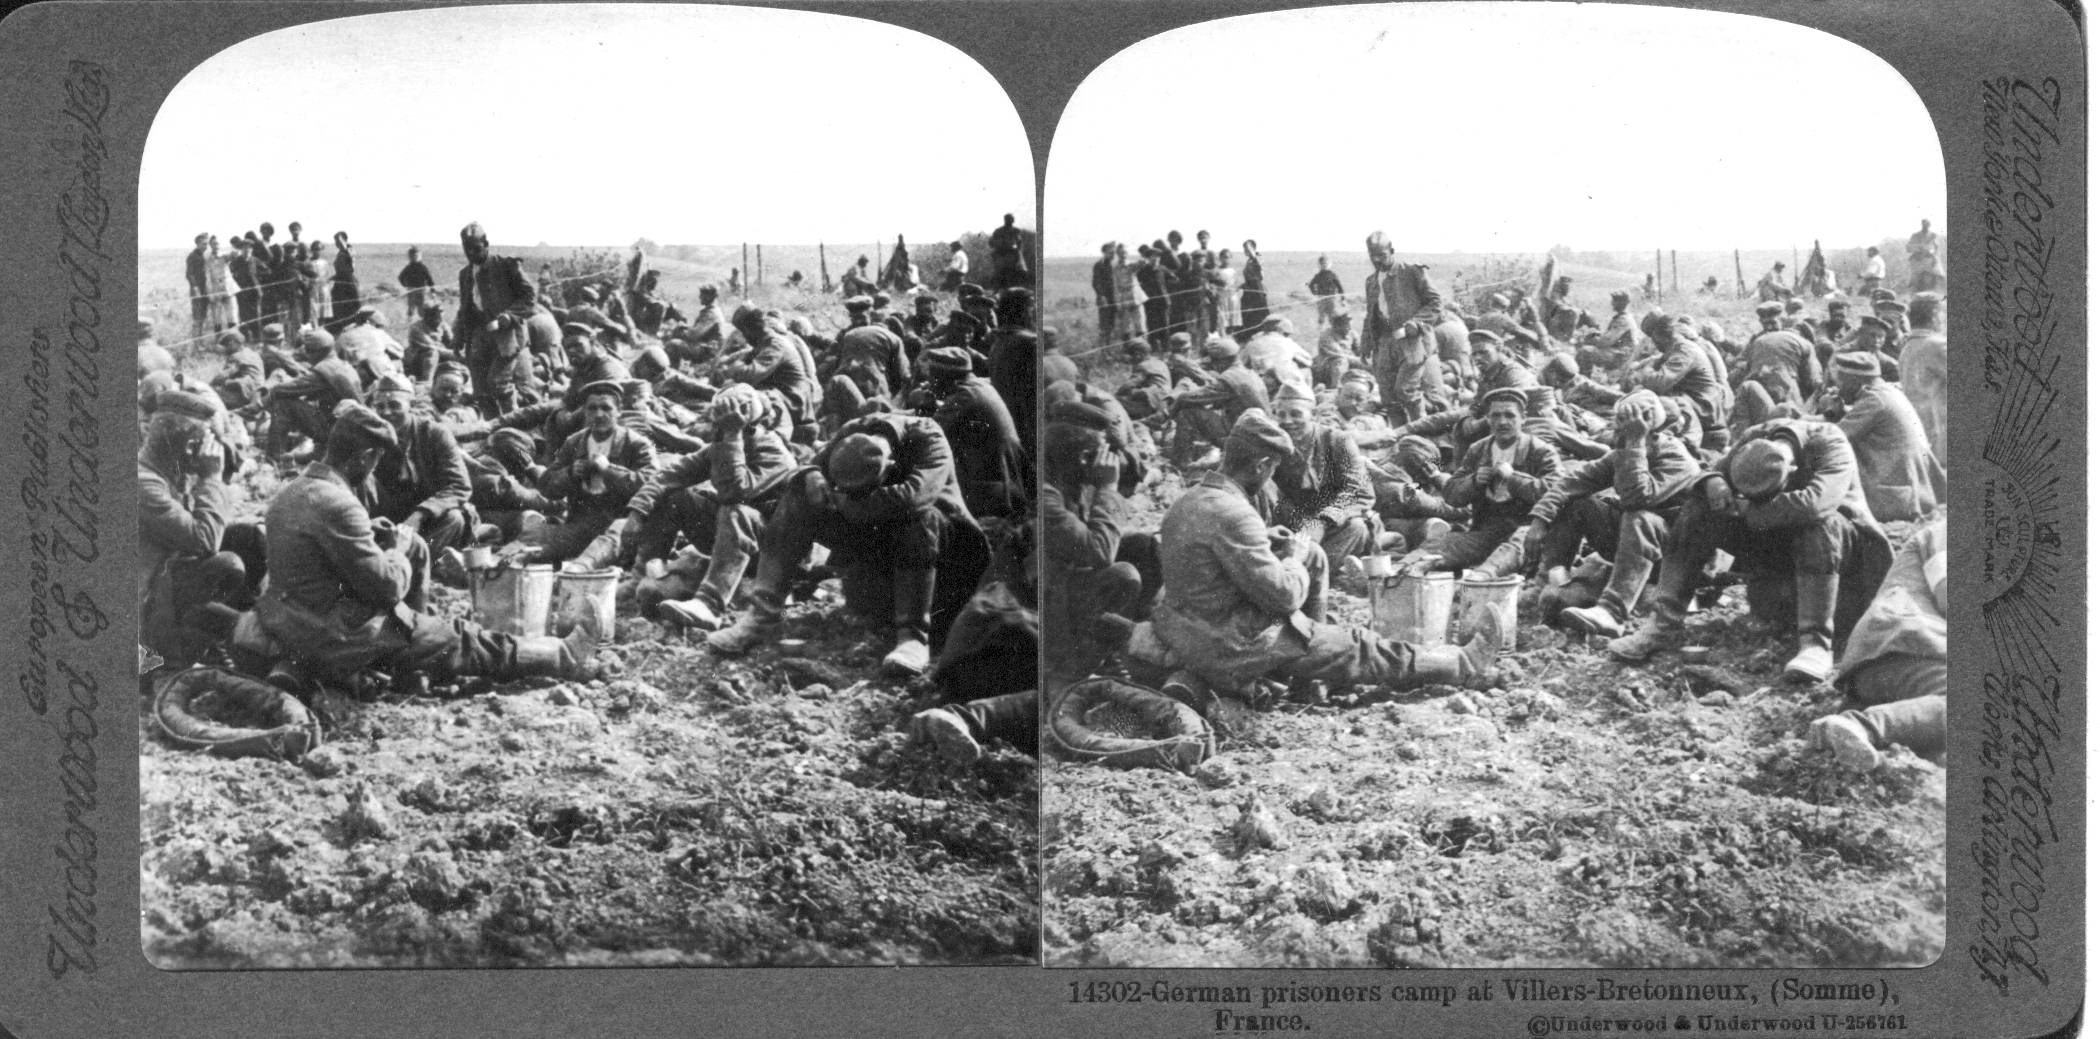 German prisoners camp at Villers-Bretonneux, (Somme), France